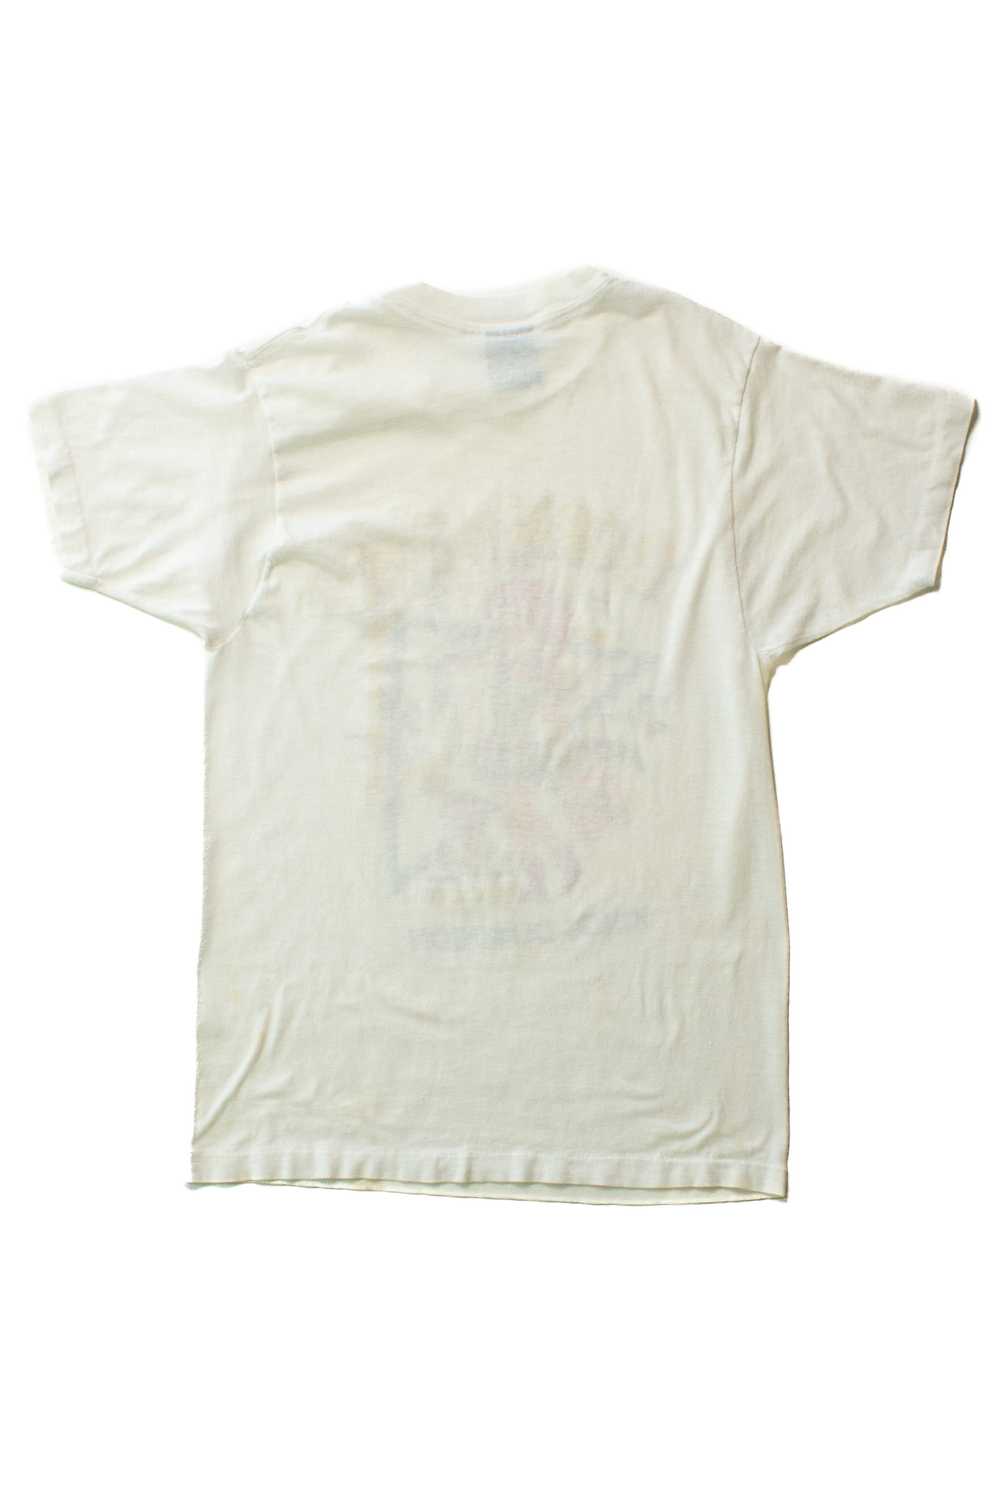 Vintage Born To Shop T-Shirt (1980s) - image 3